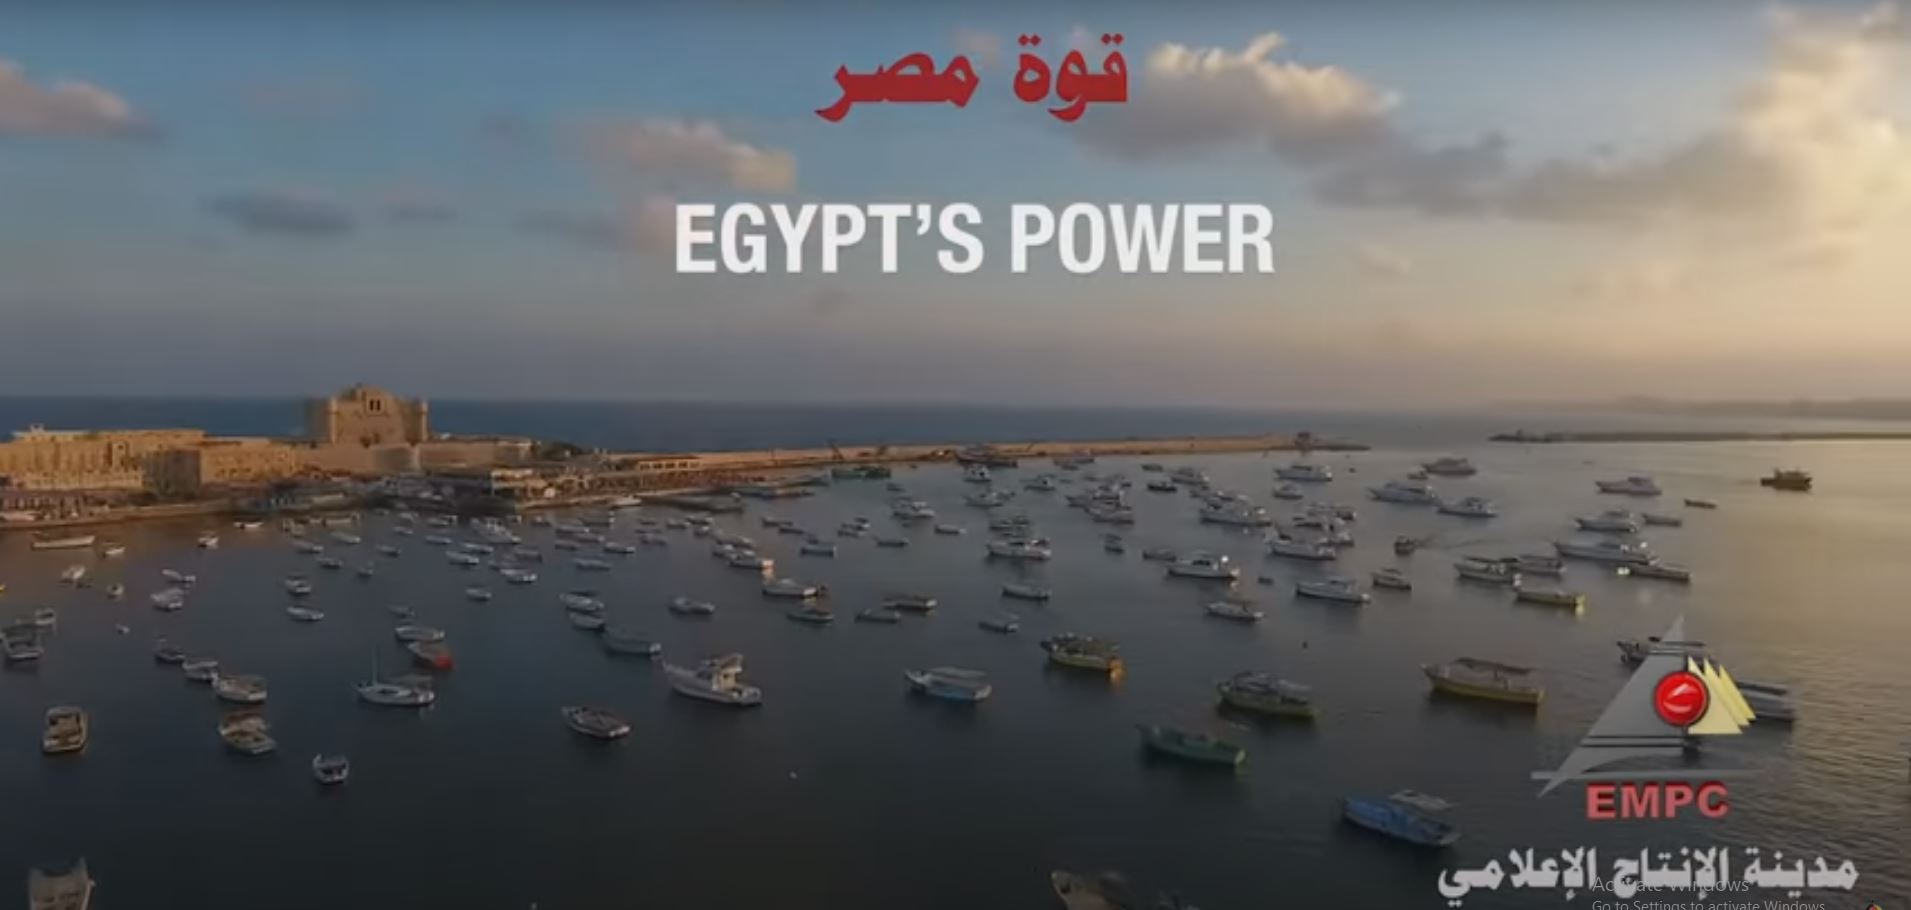 Egypt's Power Song